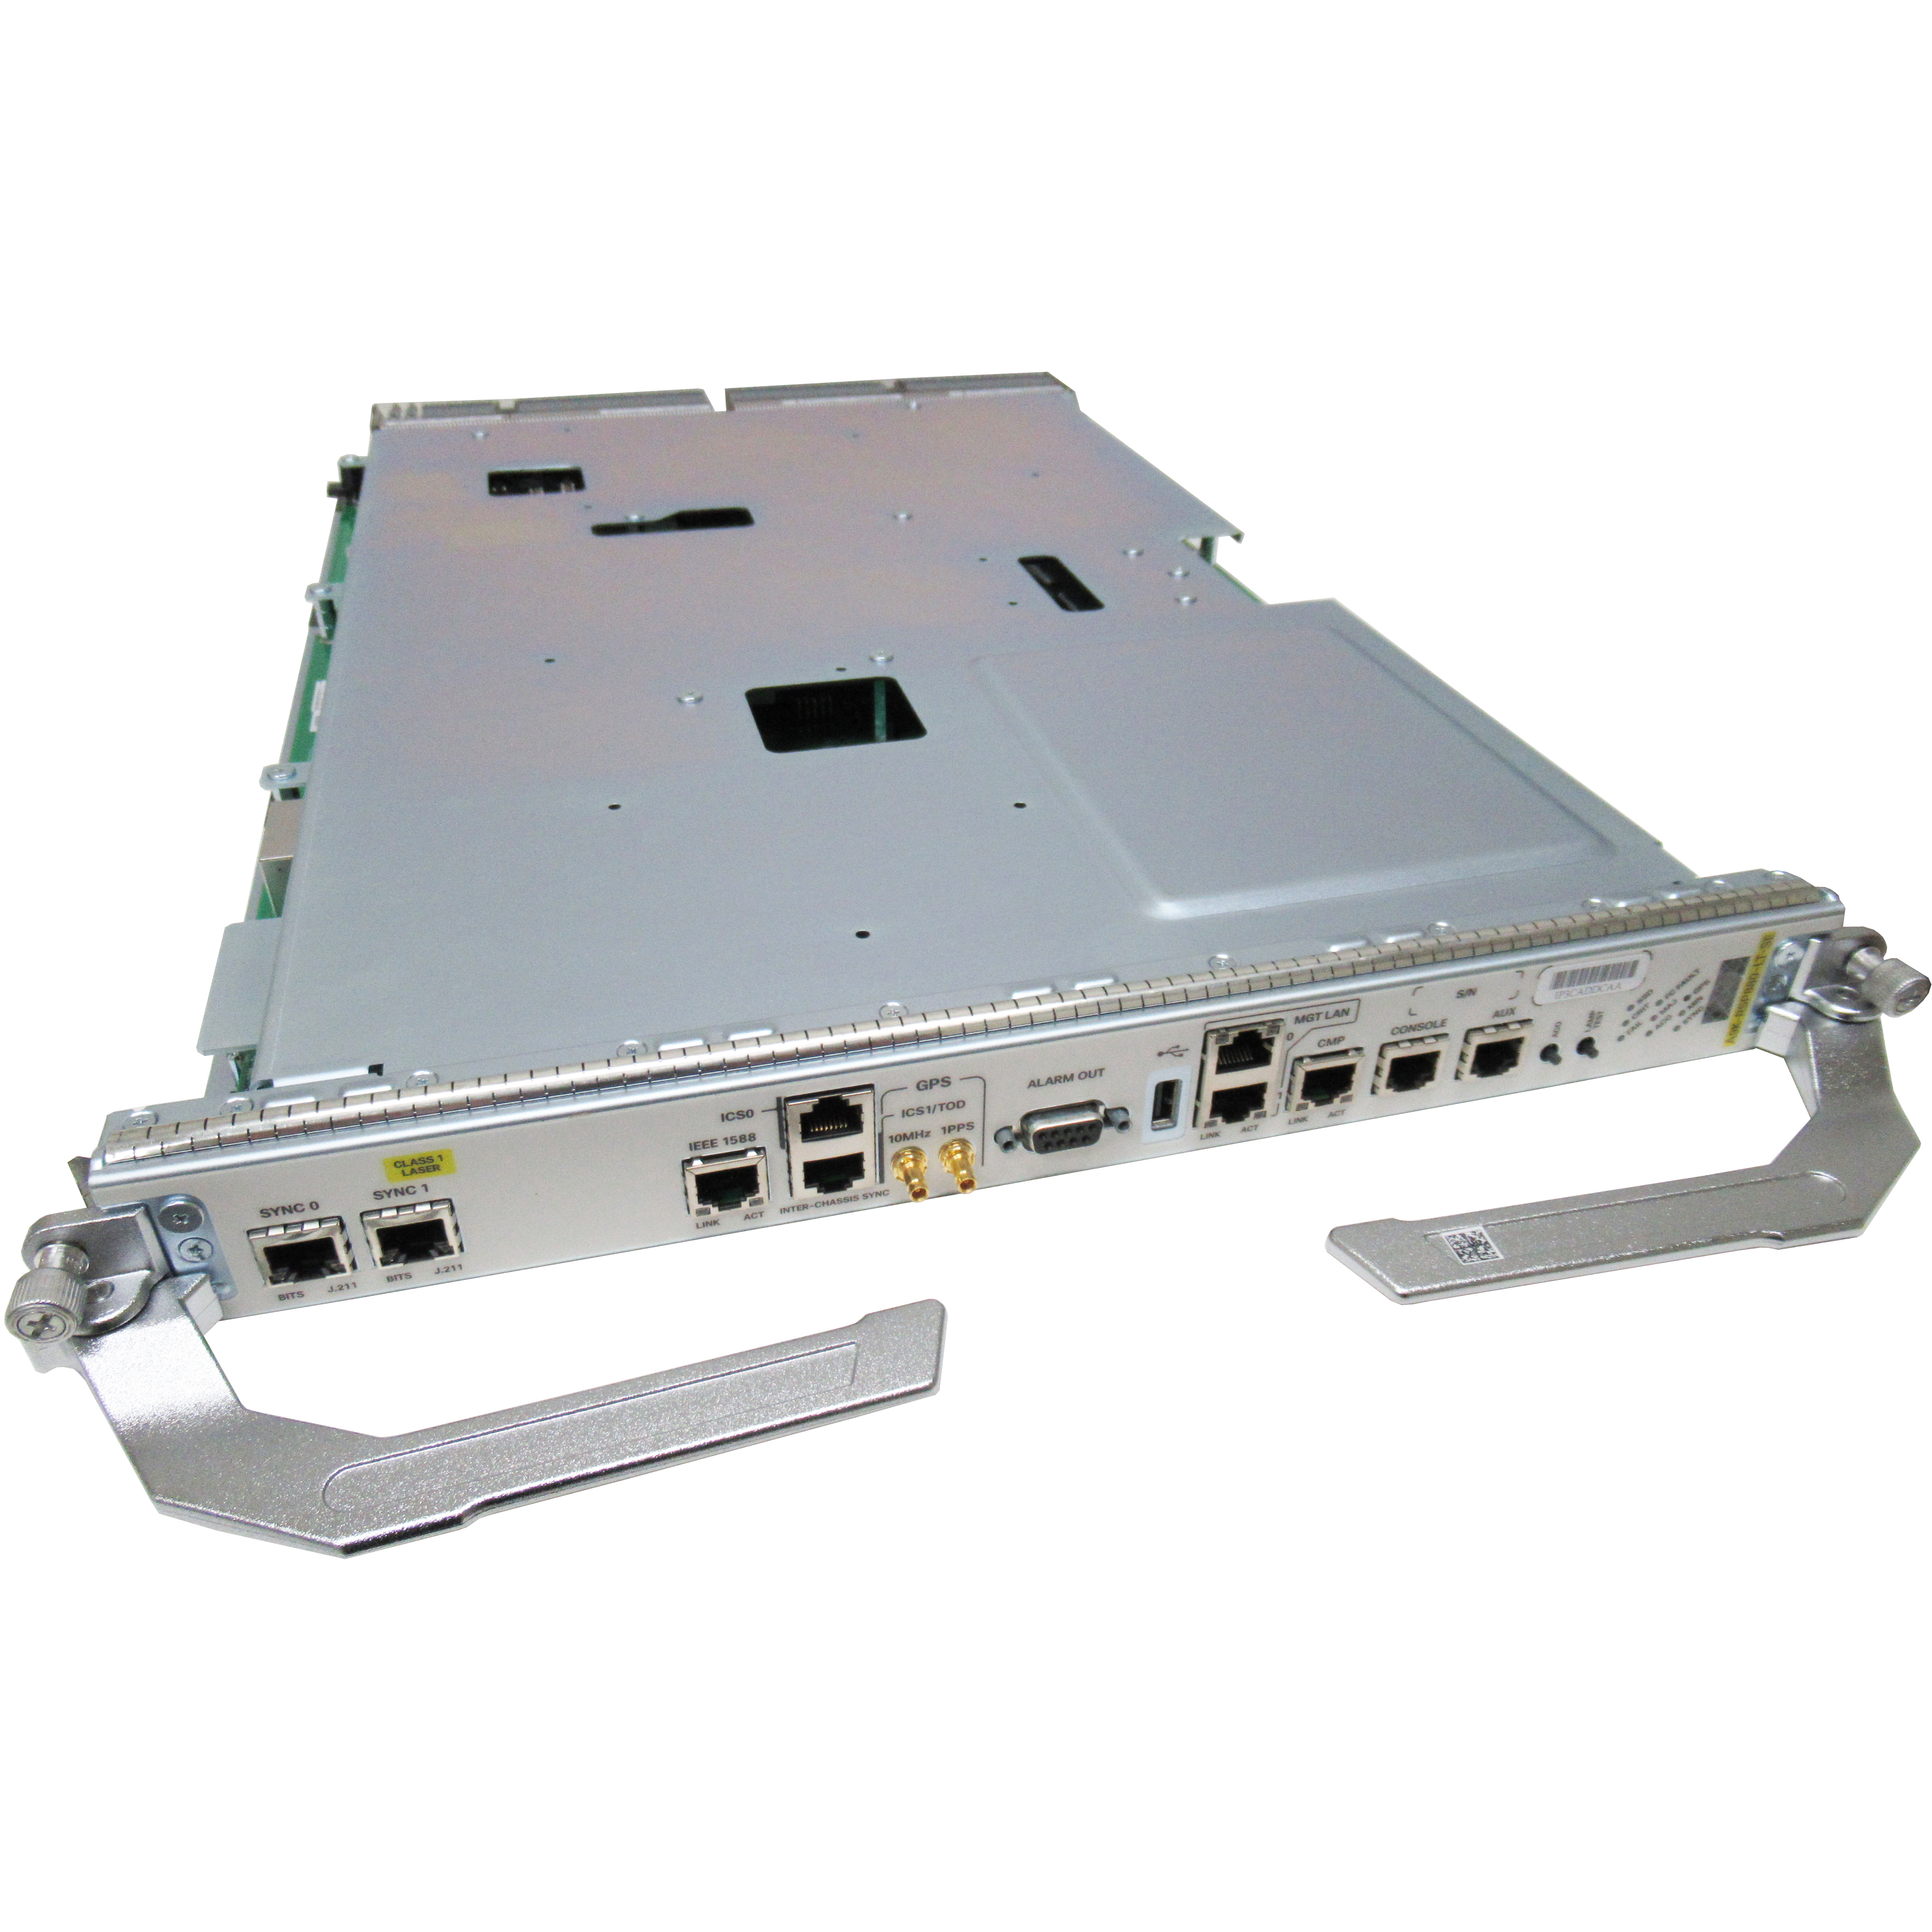 Cisco A9K-RSP880-LT-SE